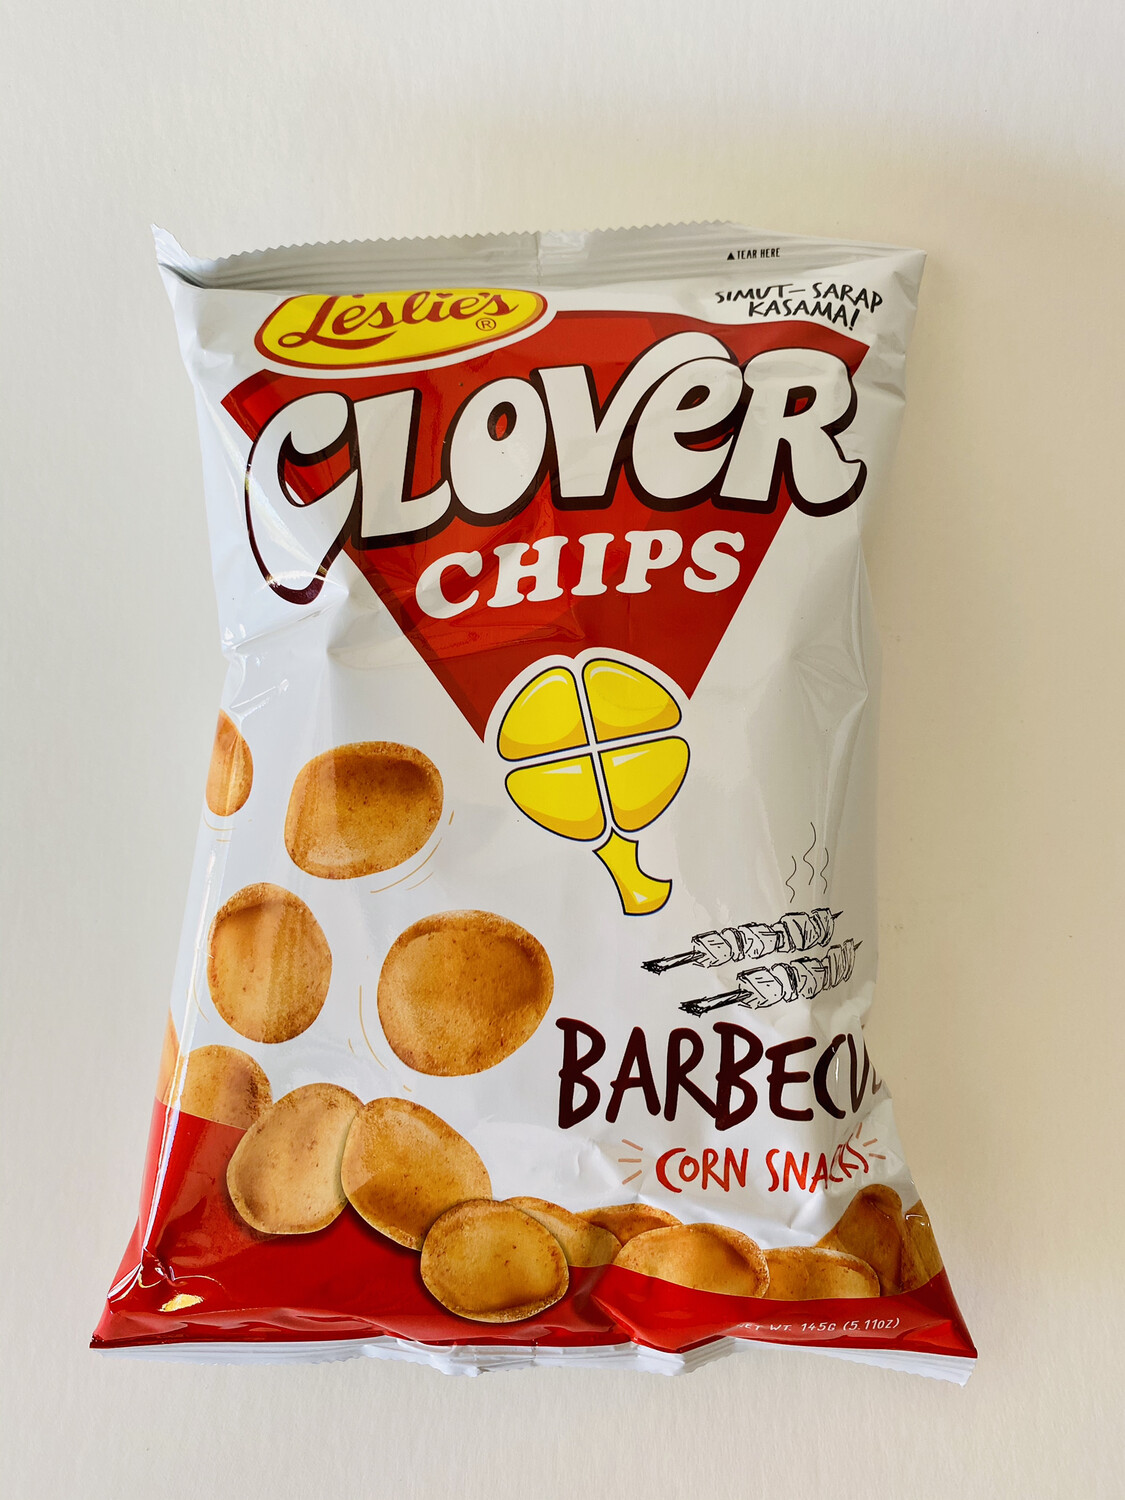 Leslie’s - Clover Chips  Barbecue Corn Snacks - 7 OZ